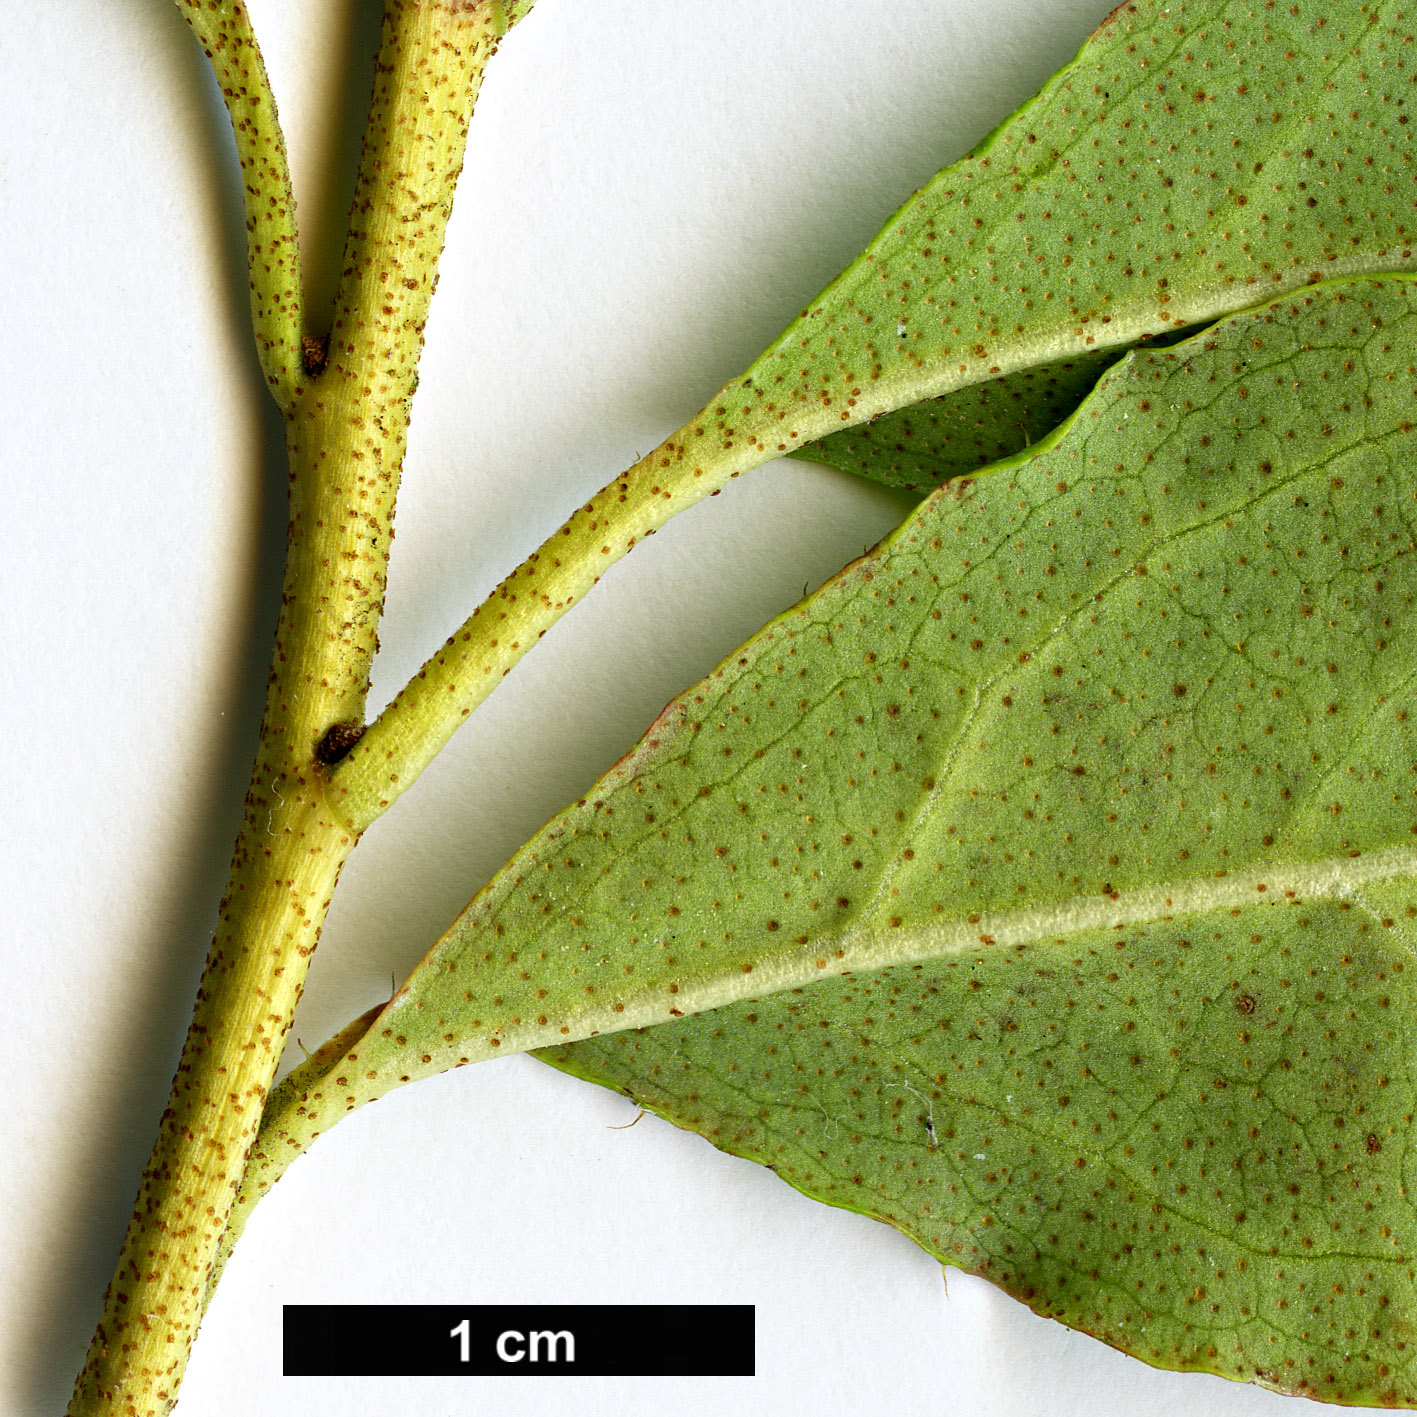 High resolution image: Family: Ericaceae - Genus: Rhododendron - Taxon: mucronulatum - SpeciesSub: var. ciliatum